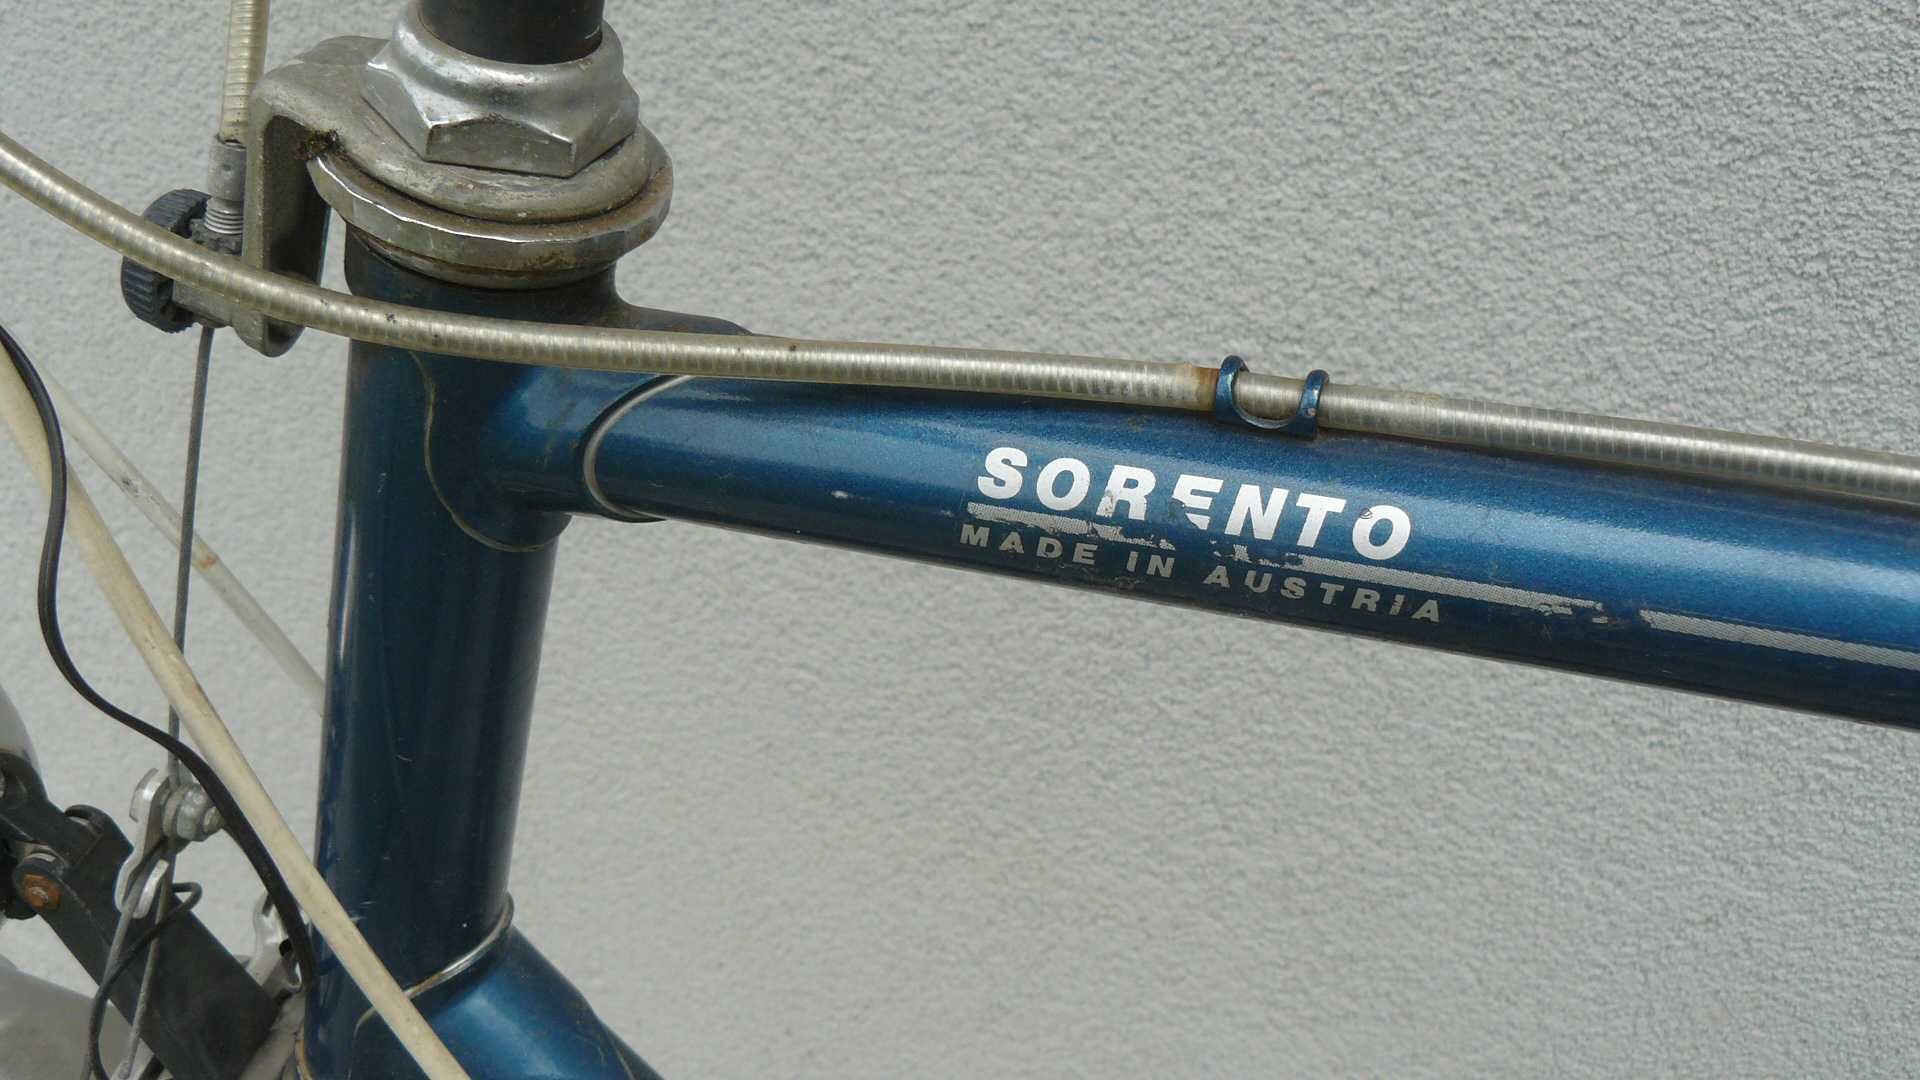 Sprzedam rower męski KTM Sorento na kołach 28 wysoka rama